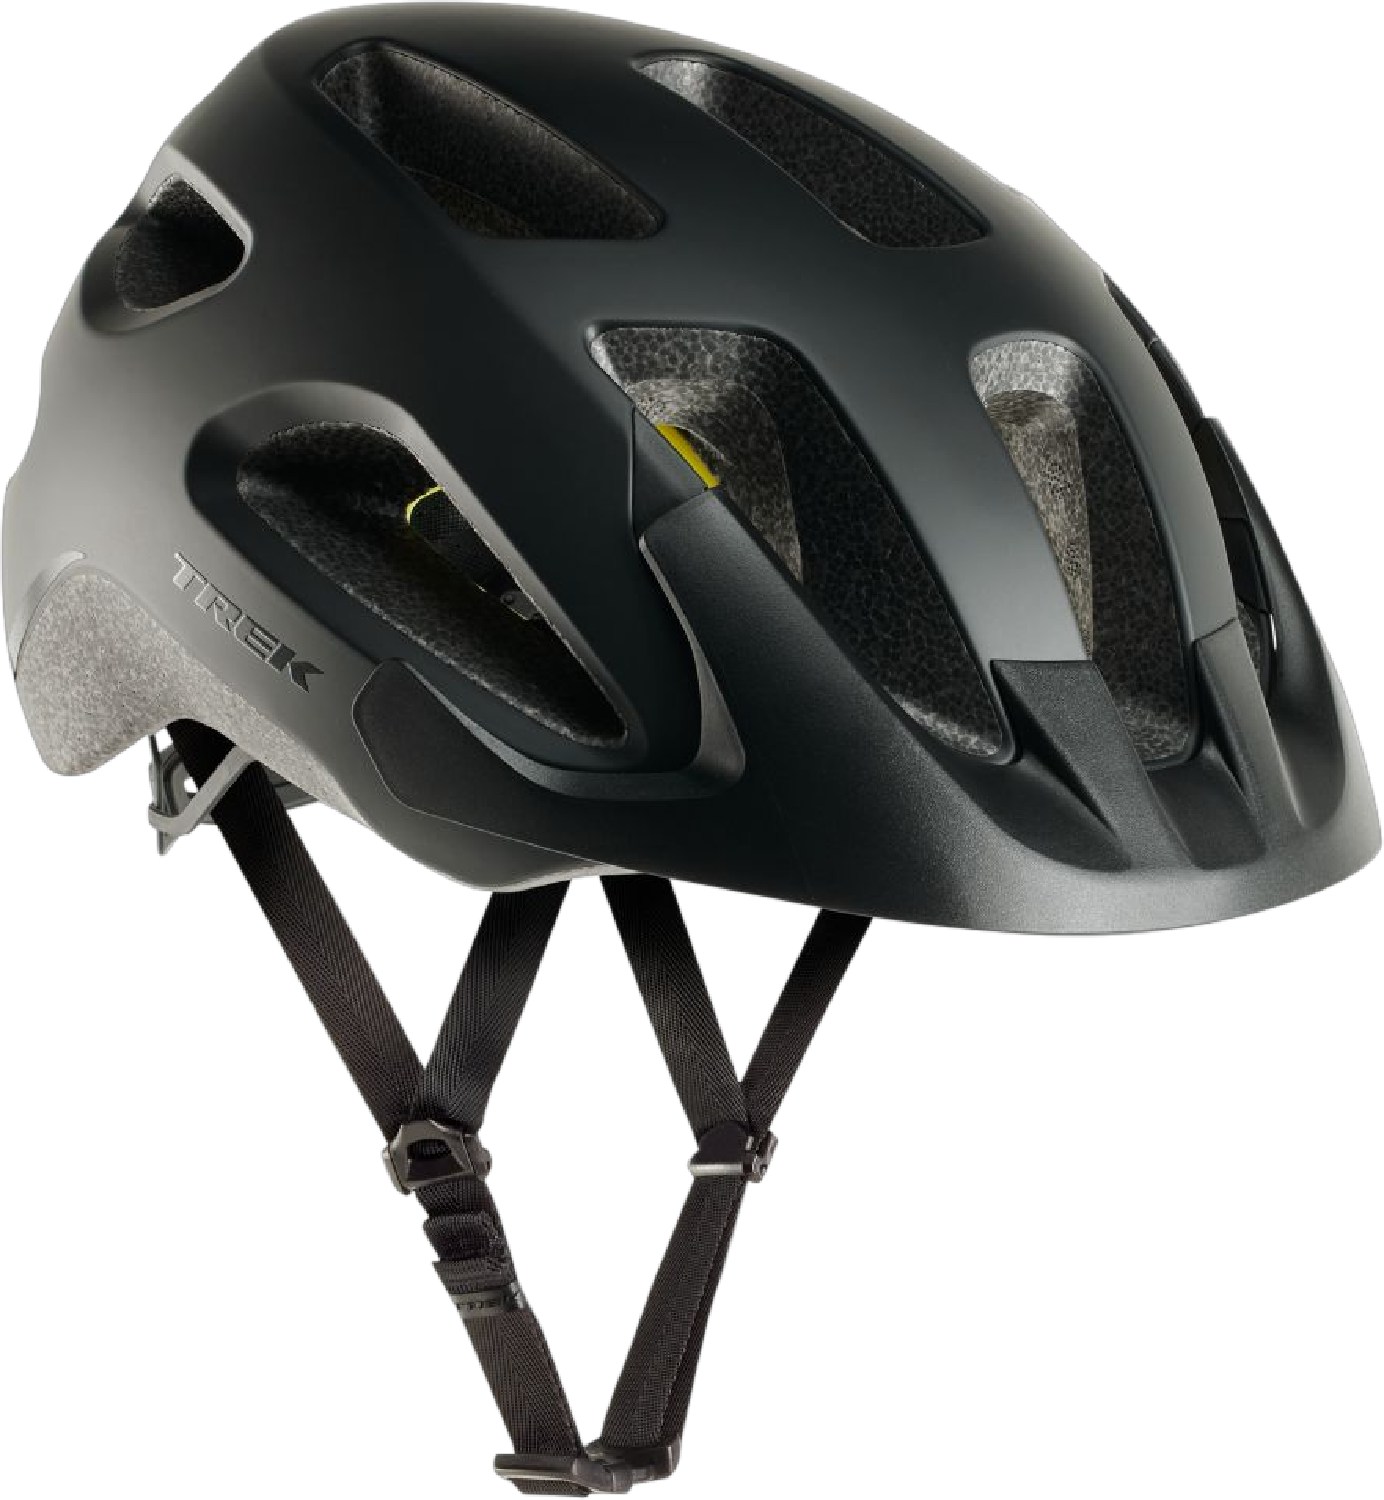 Велосипедный шлем Solstice Mips Trek, черный 1 шт велосипедный переключатель передач для trek 297656 322175 trek skye series elite 9 9 rocx spr livestrong fx trek 8500 mech dropout